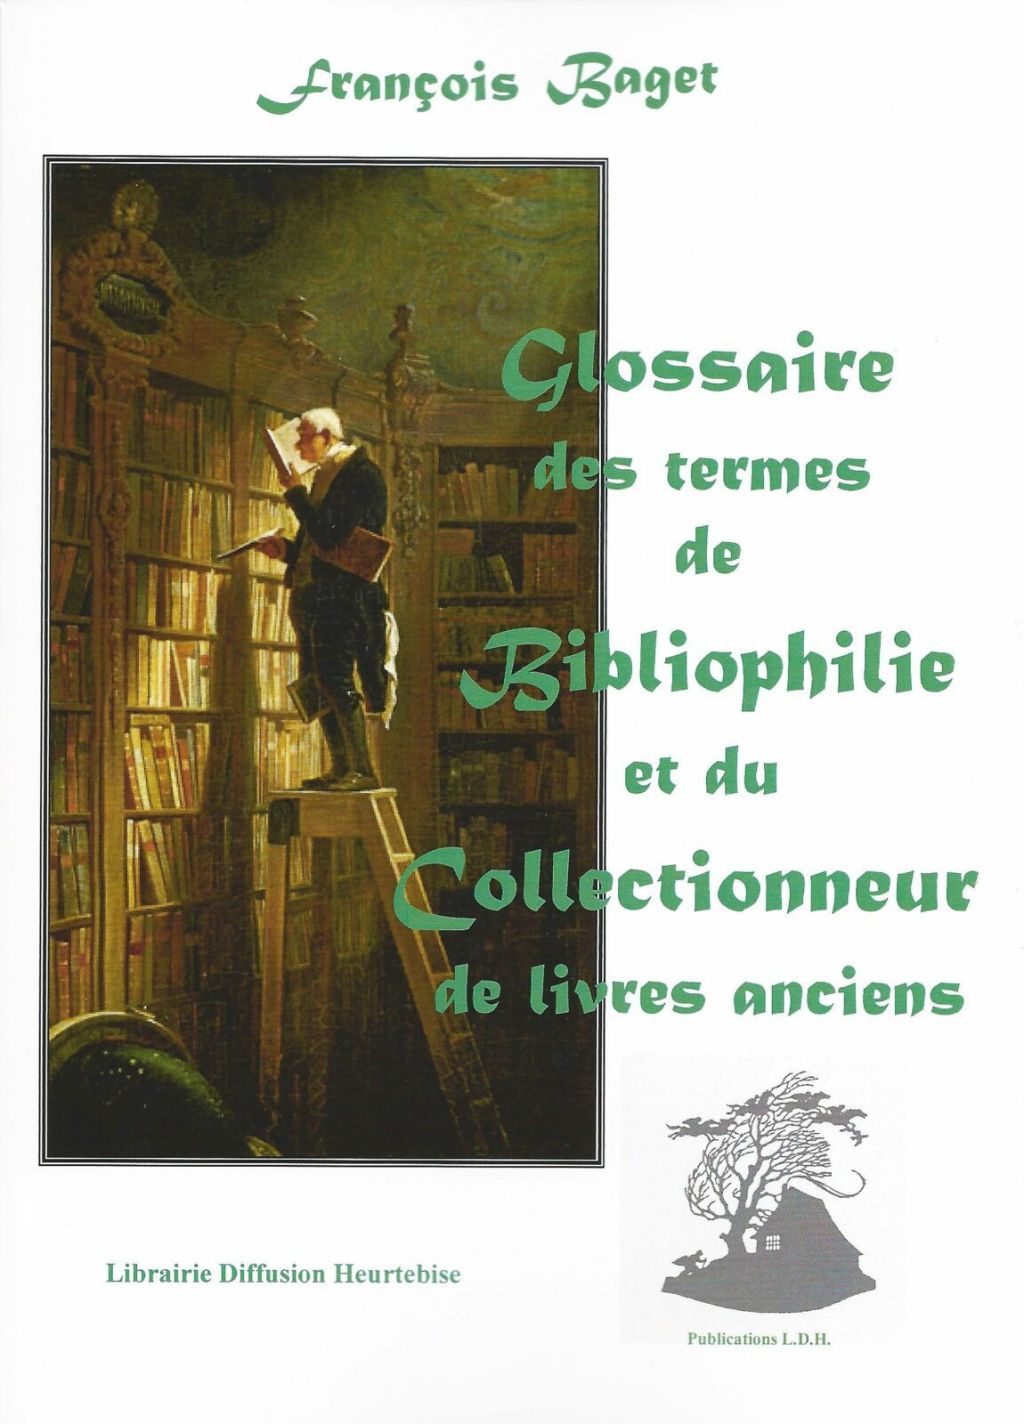 « Glossaire des termes de bibliophilie » Réédition de l’ouvrage de François Baget